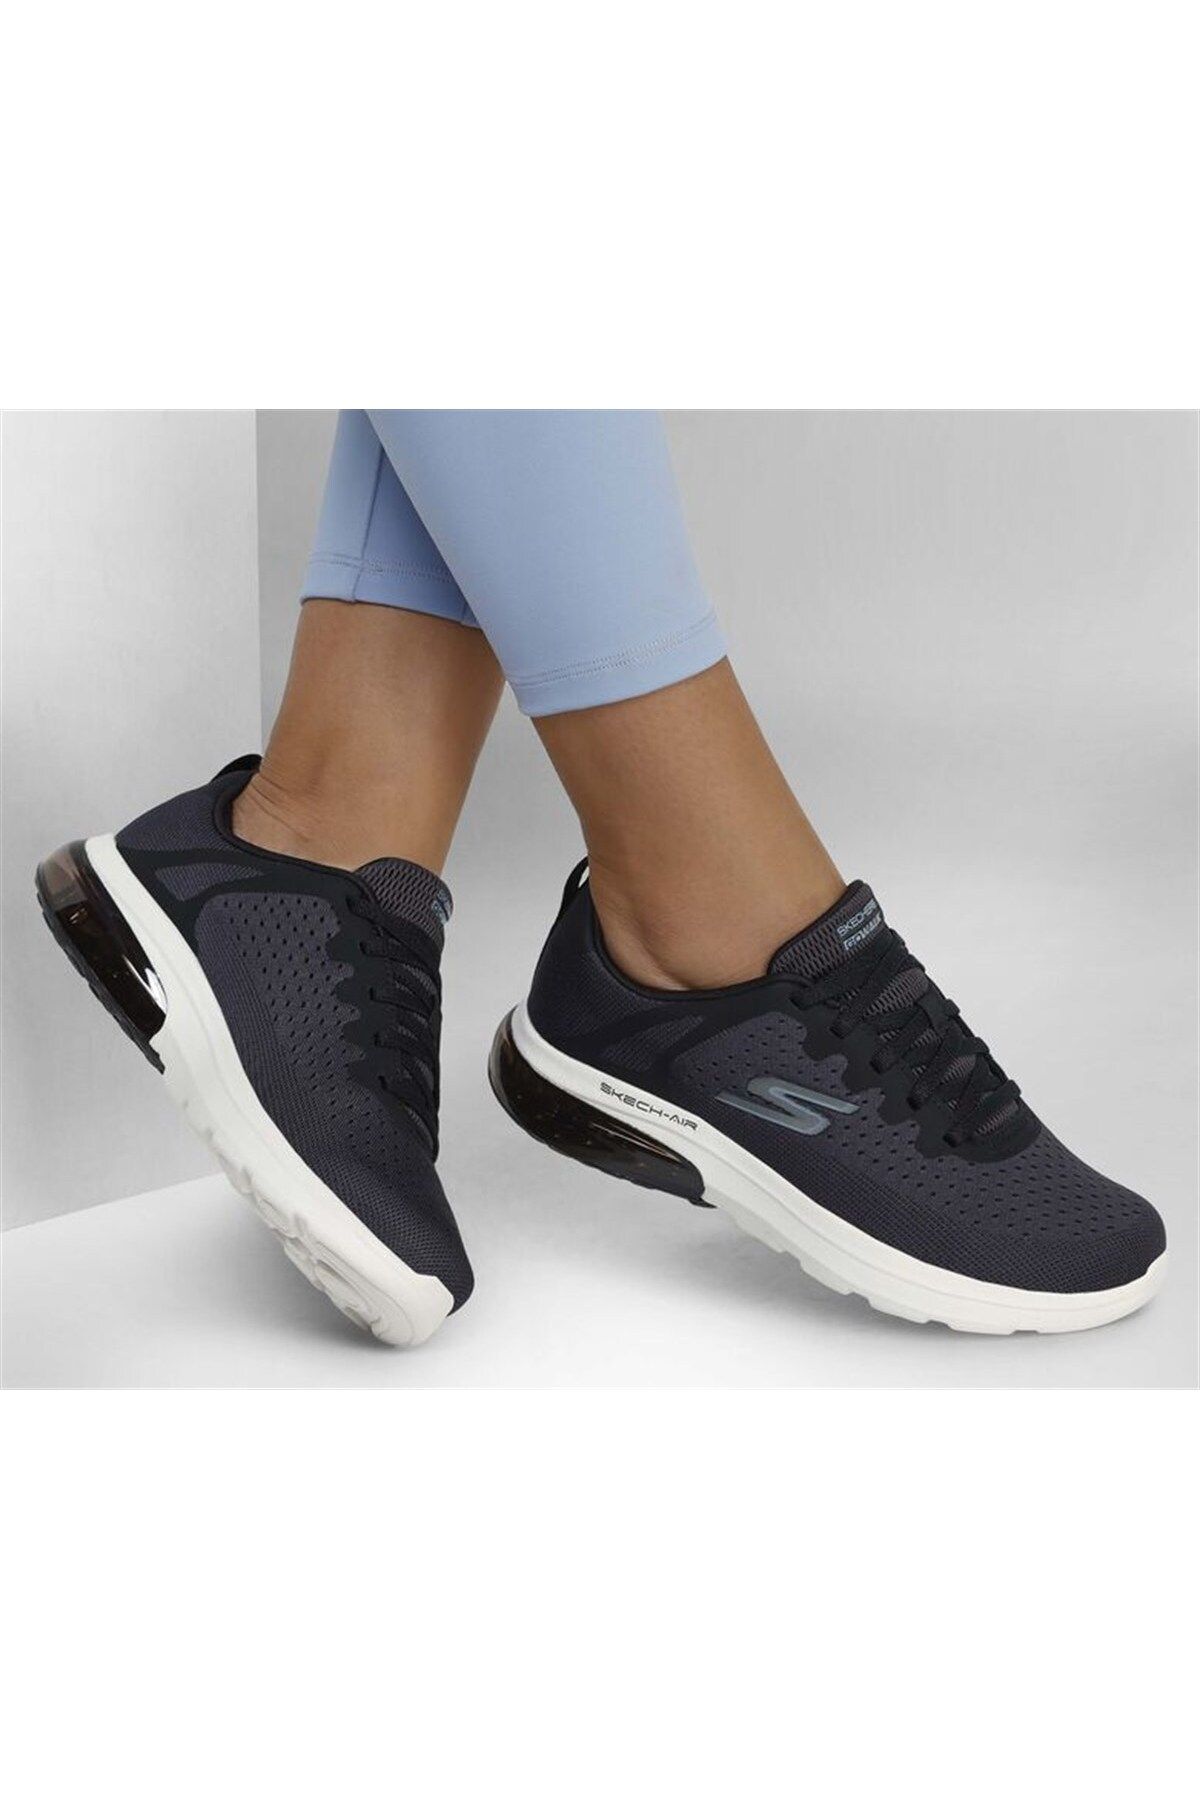 Skechers Kadın Yürüyüş Ayakkabısı 124362 Bklb Siyah/açık Mavi